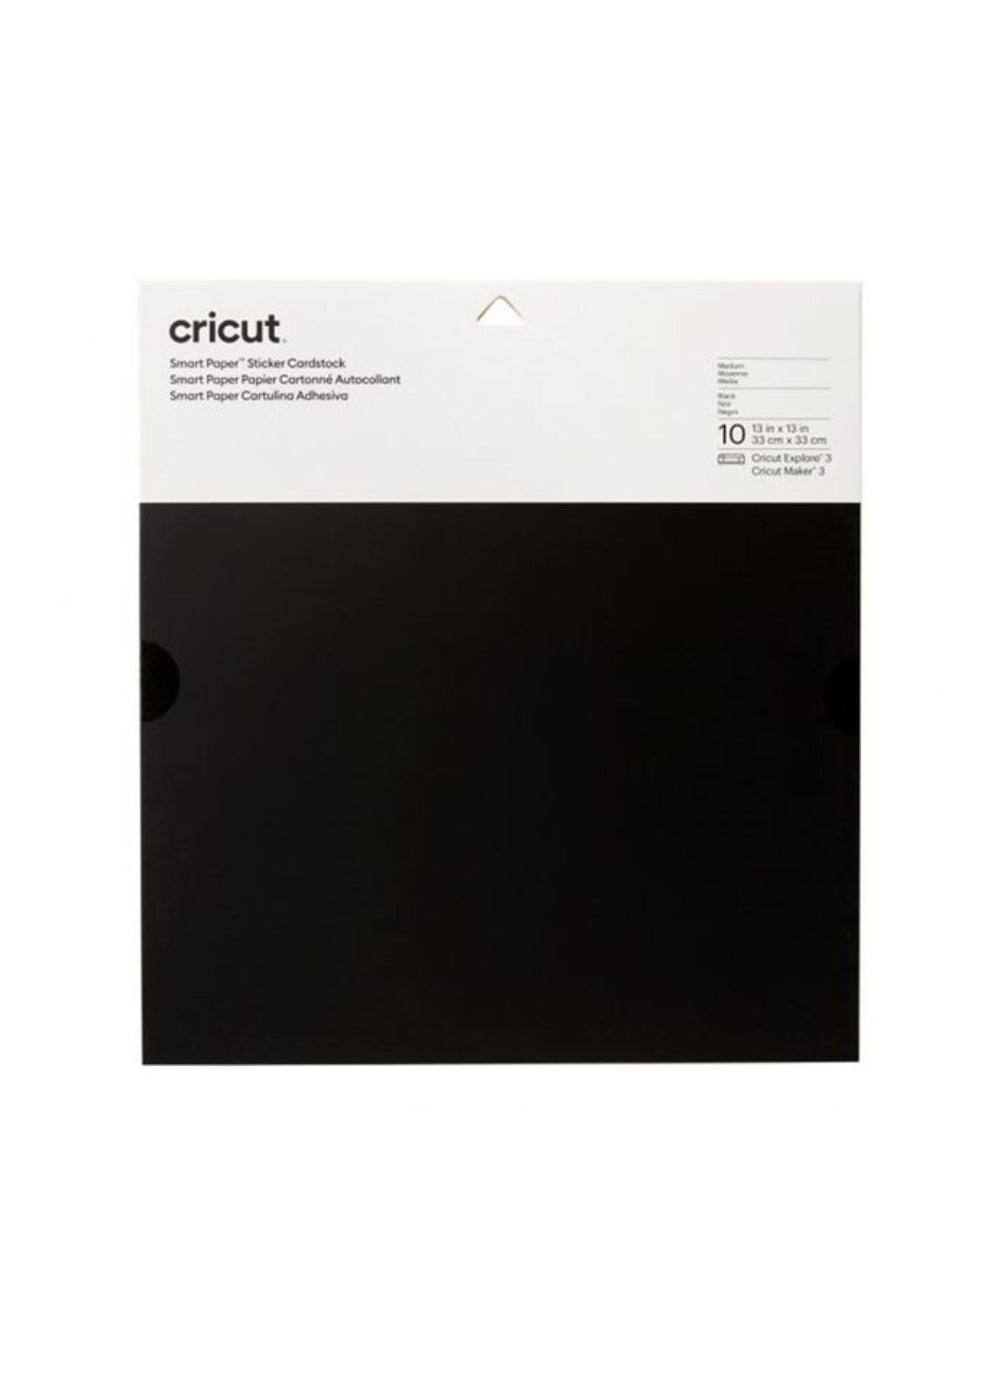 Cricut Smart Paper Sticker Cardstock ,White